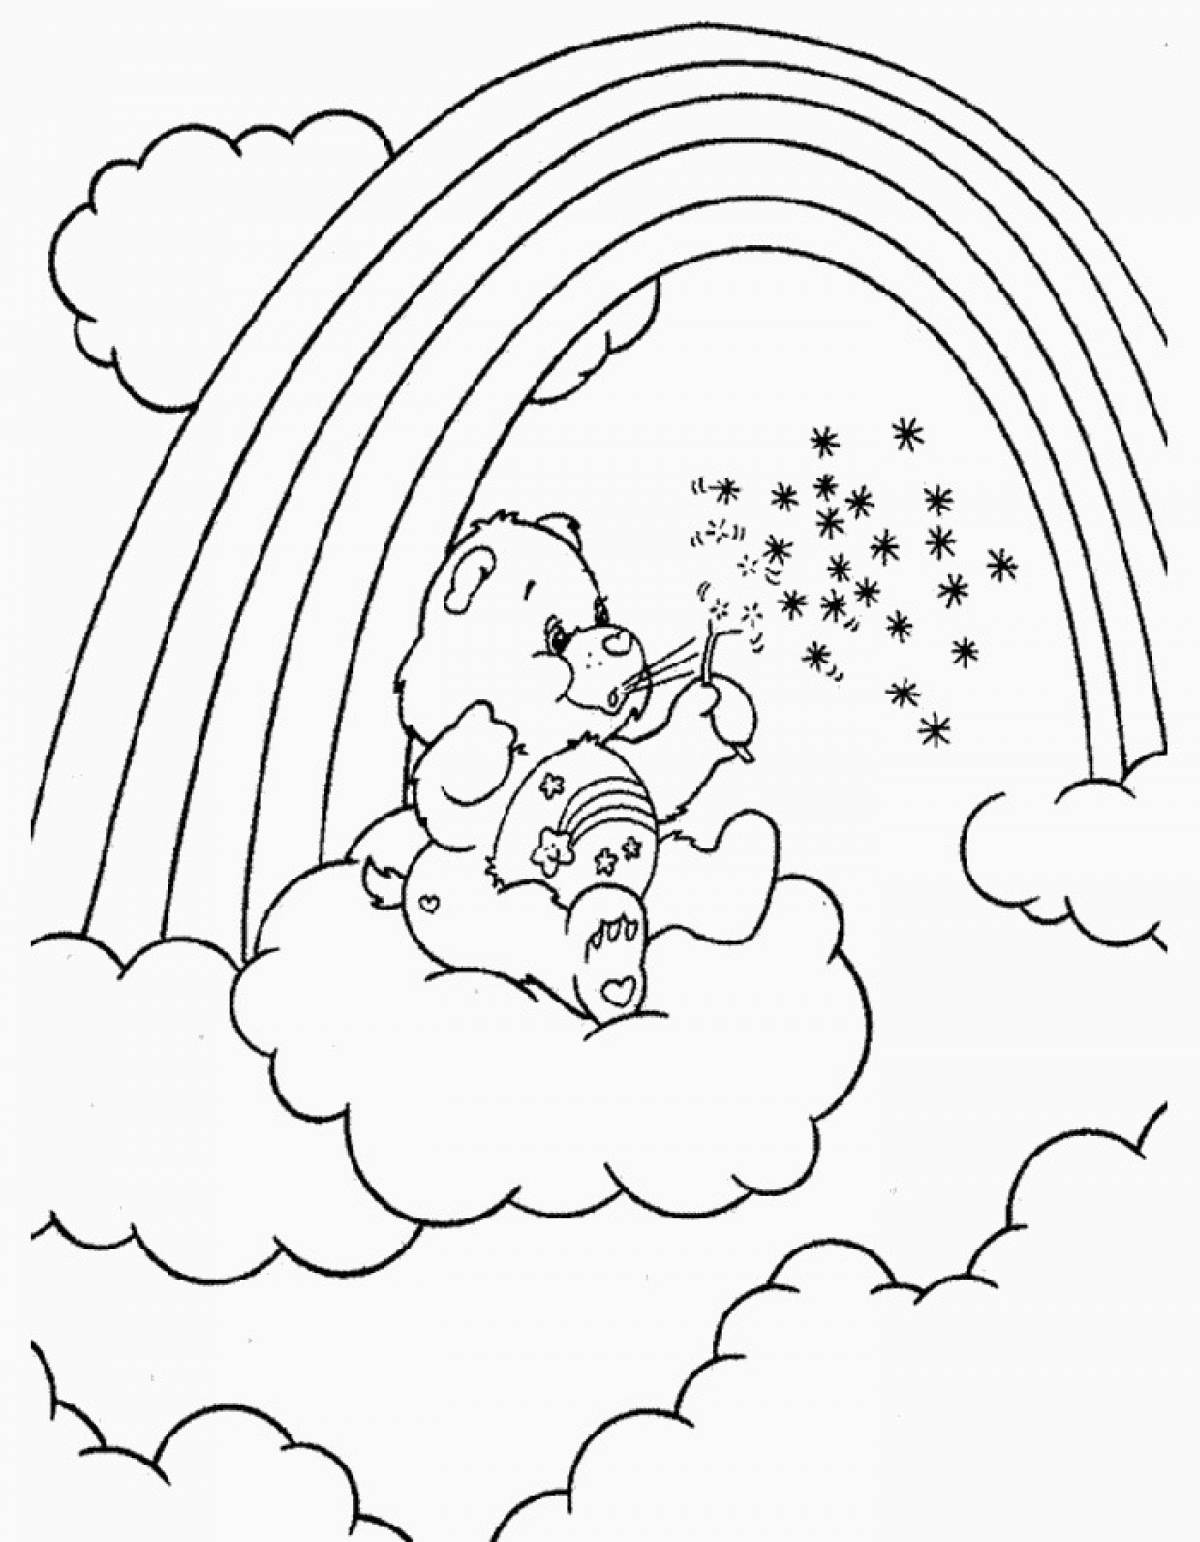 Teddy bear on the cloud